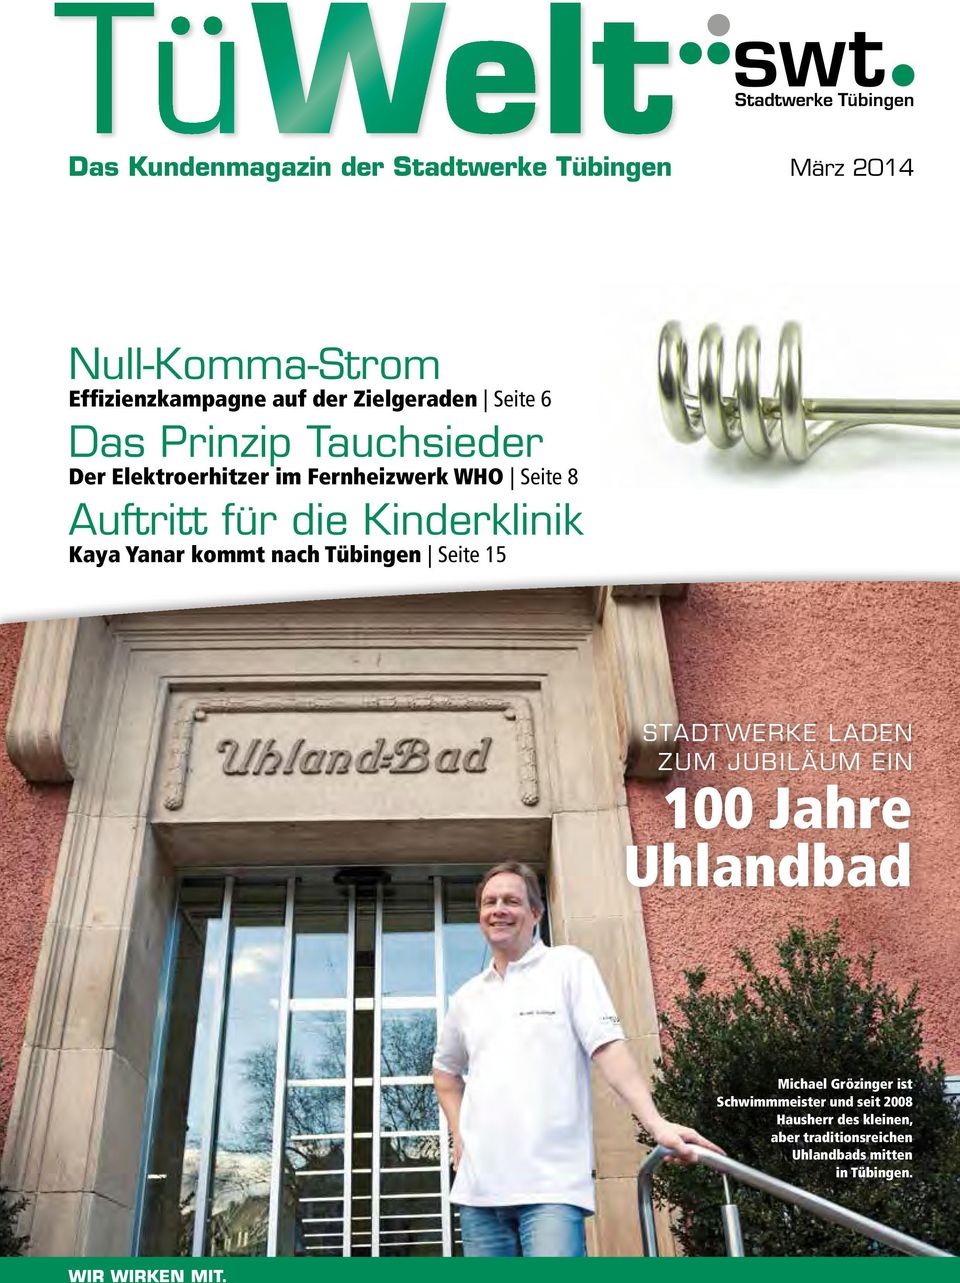 Kaya Yanar kommt nach Tübingen Seite 15 STADTWERKE LADEN ZUM JUBILÄUM EIN 100 Jahre Uhlandbad Michael